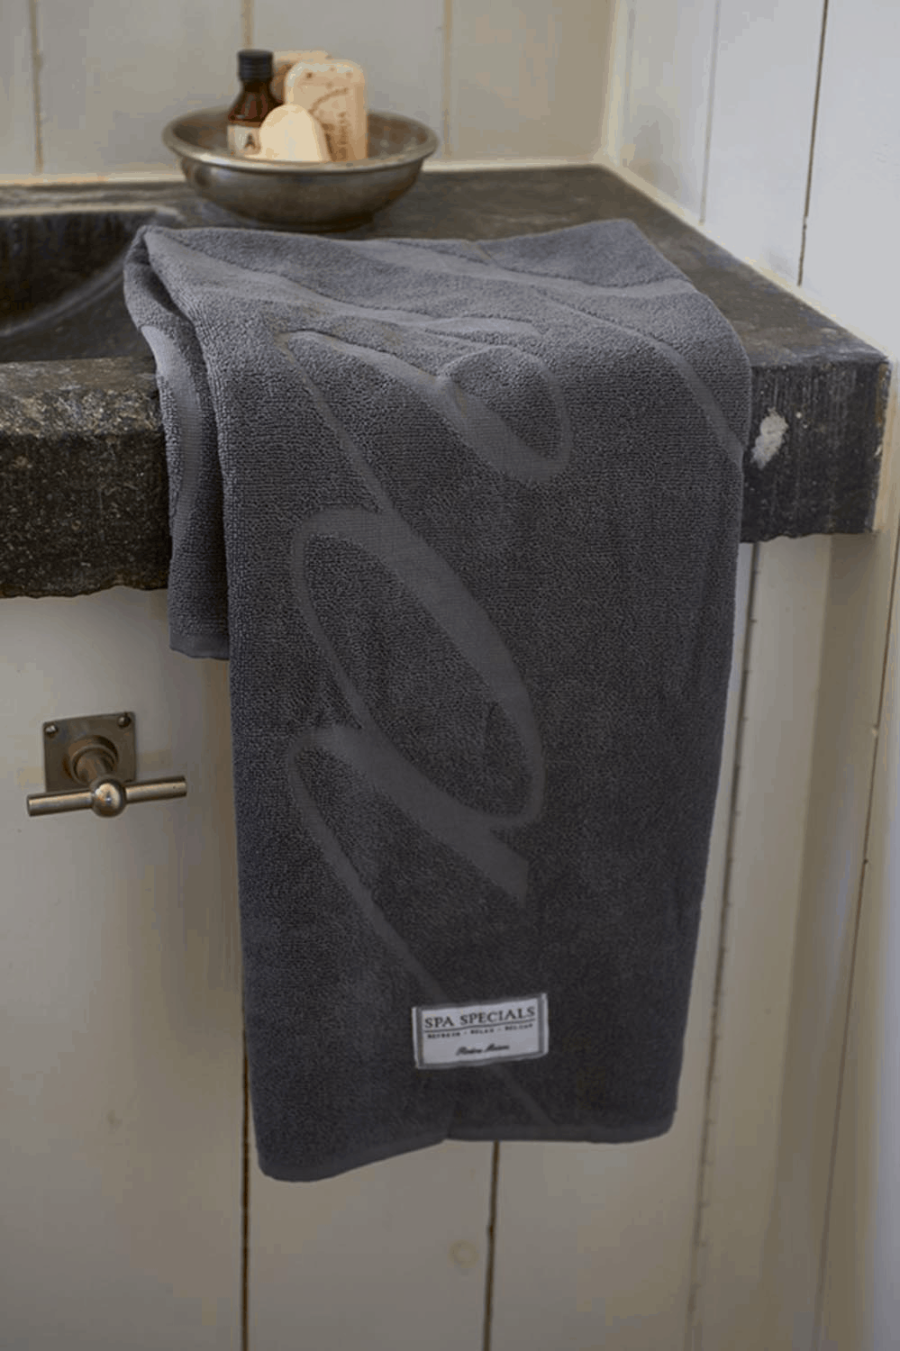 Spa Specials Bath Towel 100x50 an